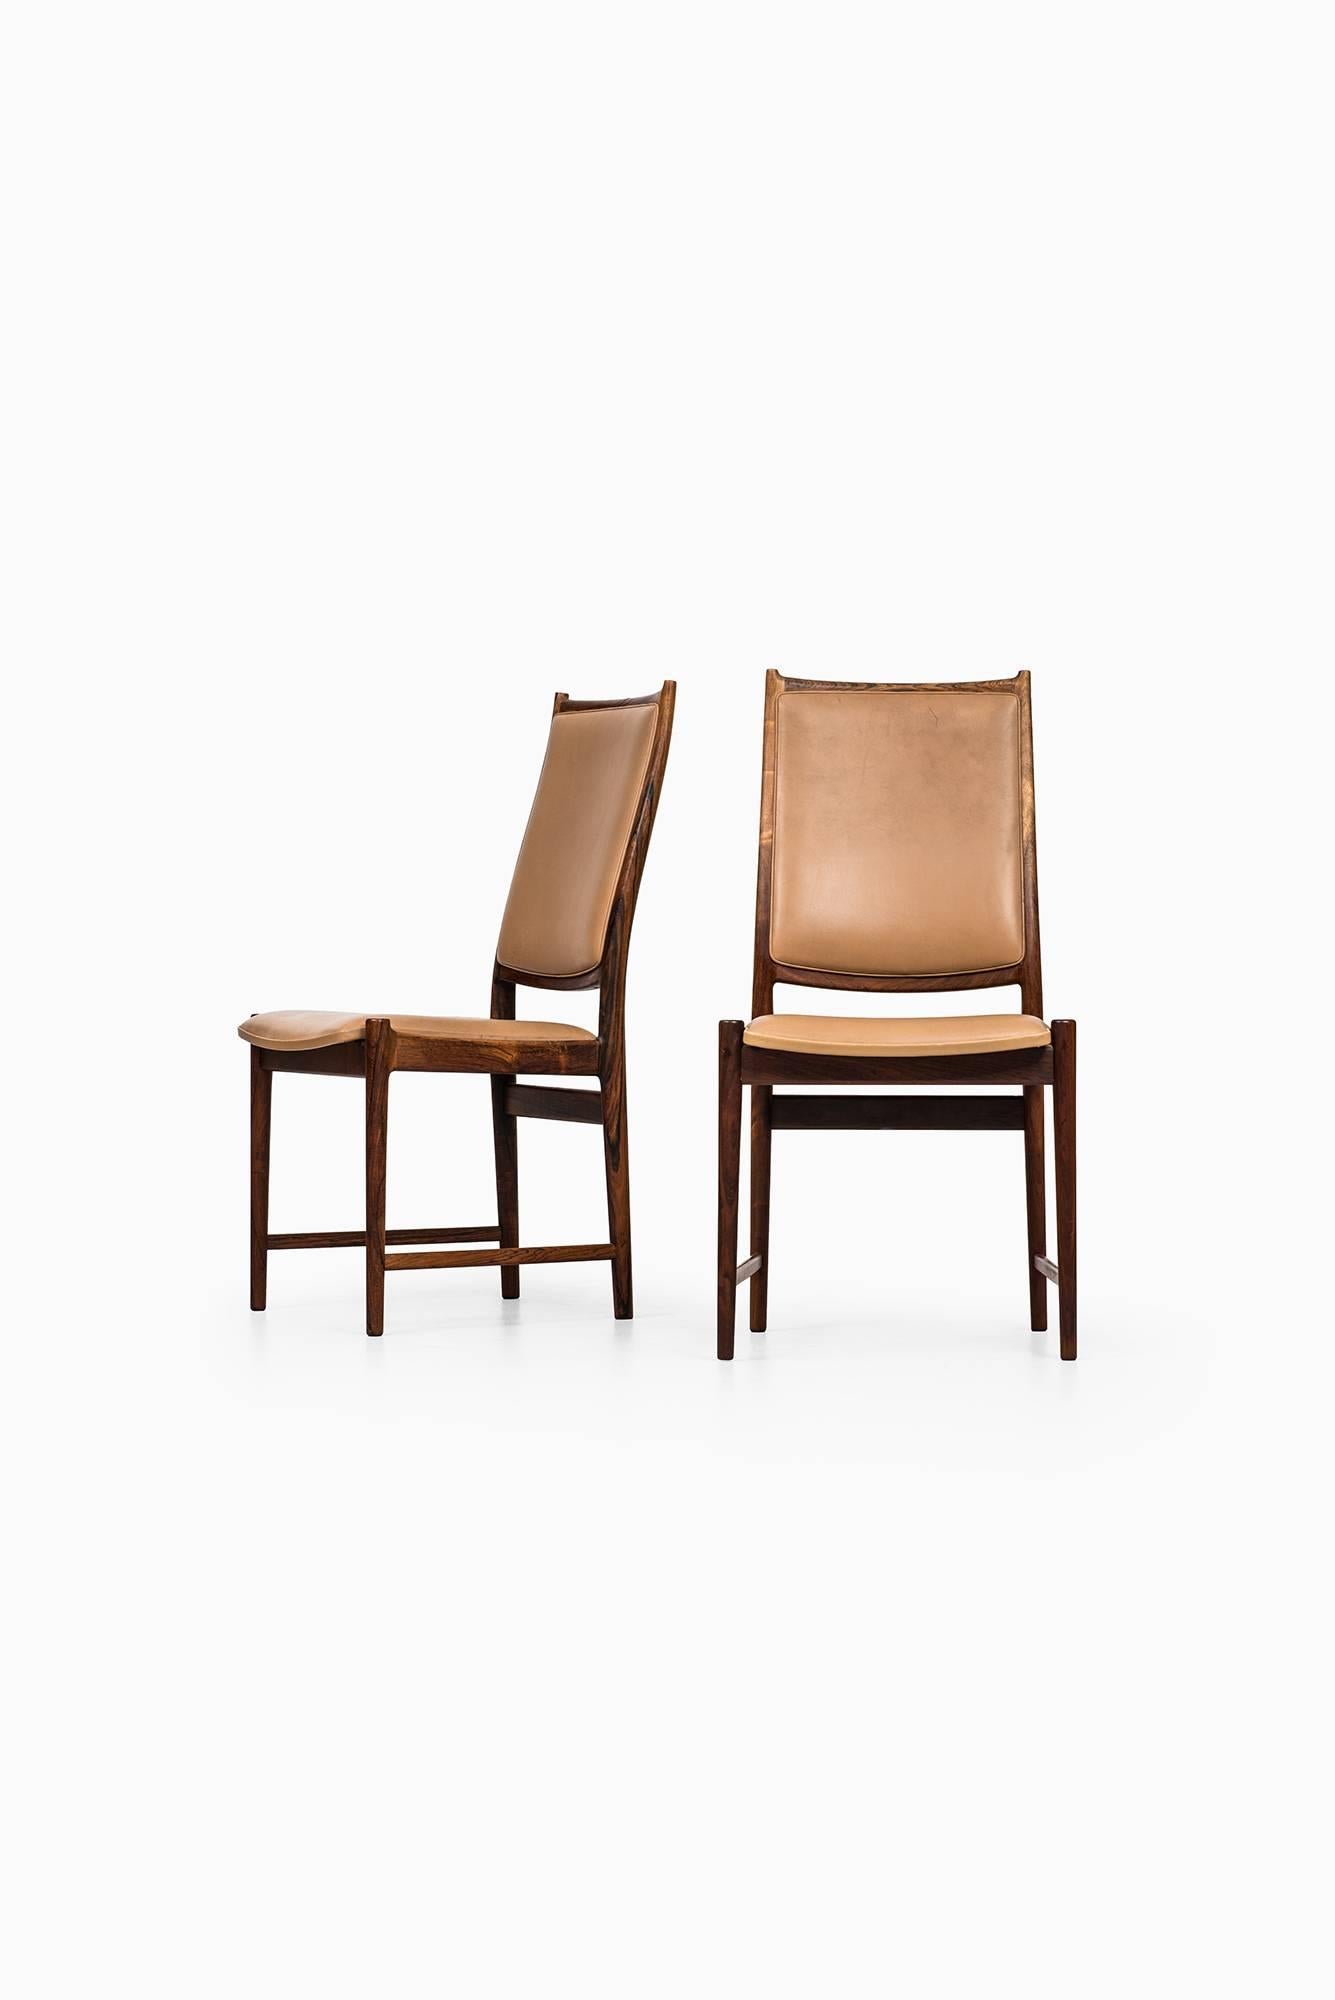 Sehr seltener Satz von sechs Esszimmerstühlen mit hoher Rückenlehne, Modell Darby, entworfen von Torbjørn Afdal. Produziert von der Nesjestranda møbelfabrik in Norwegen.